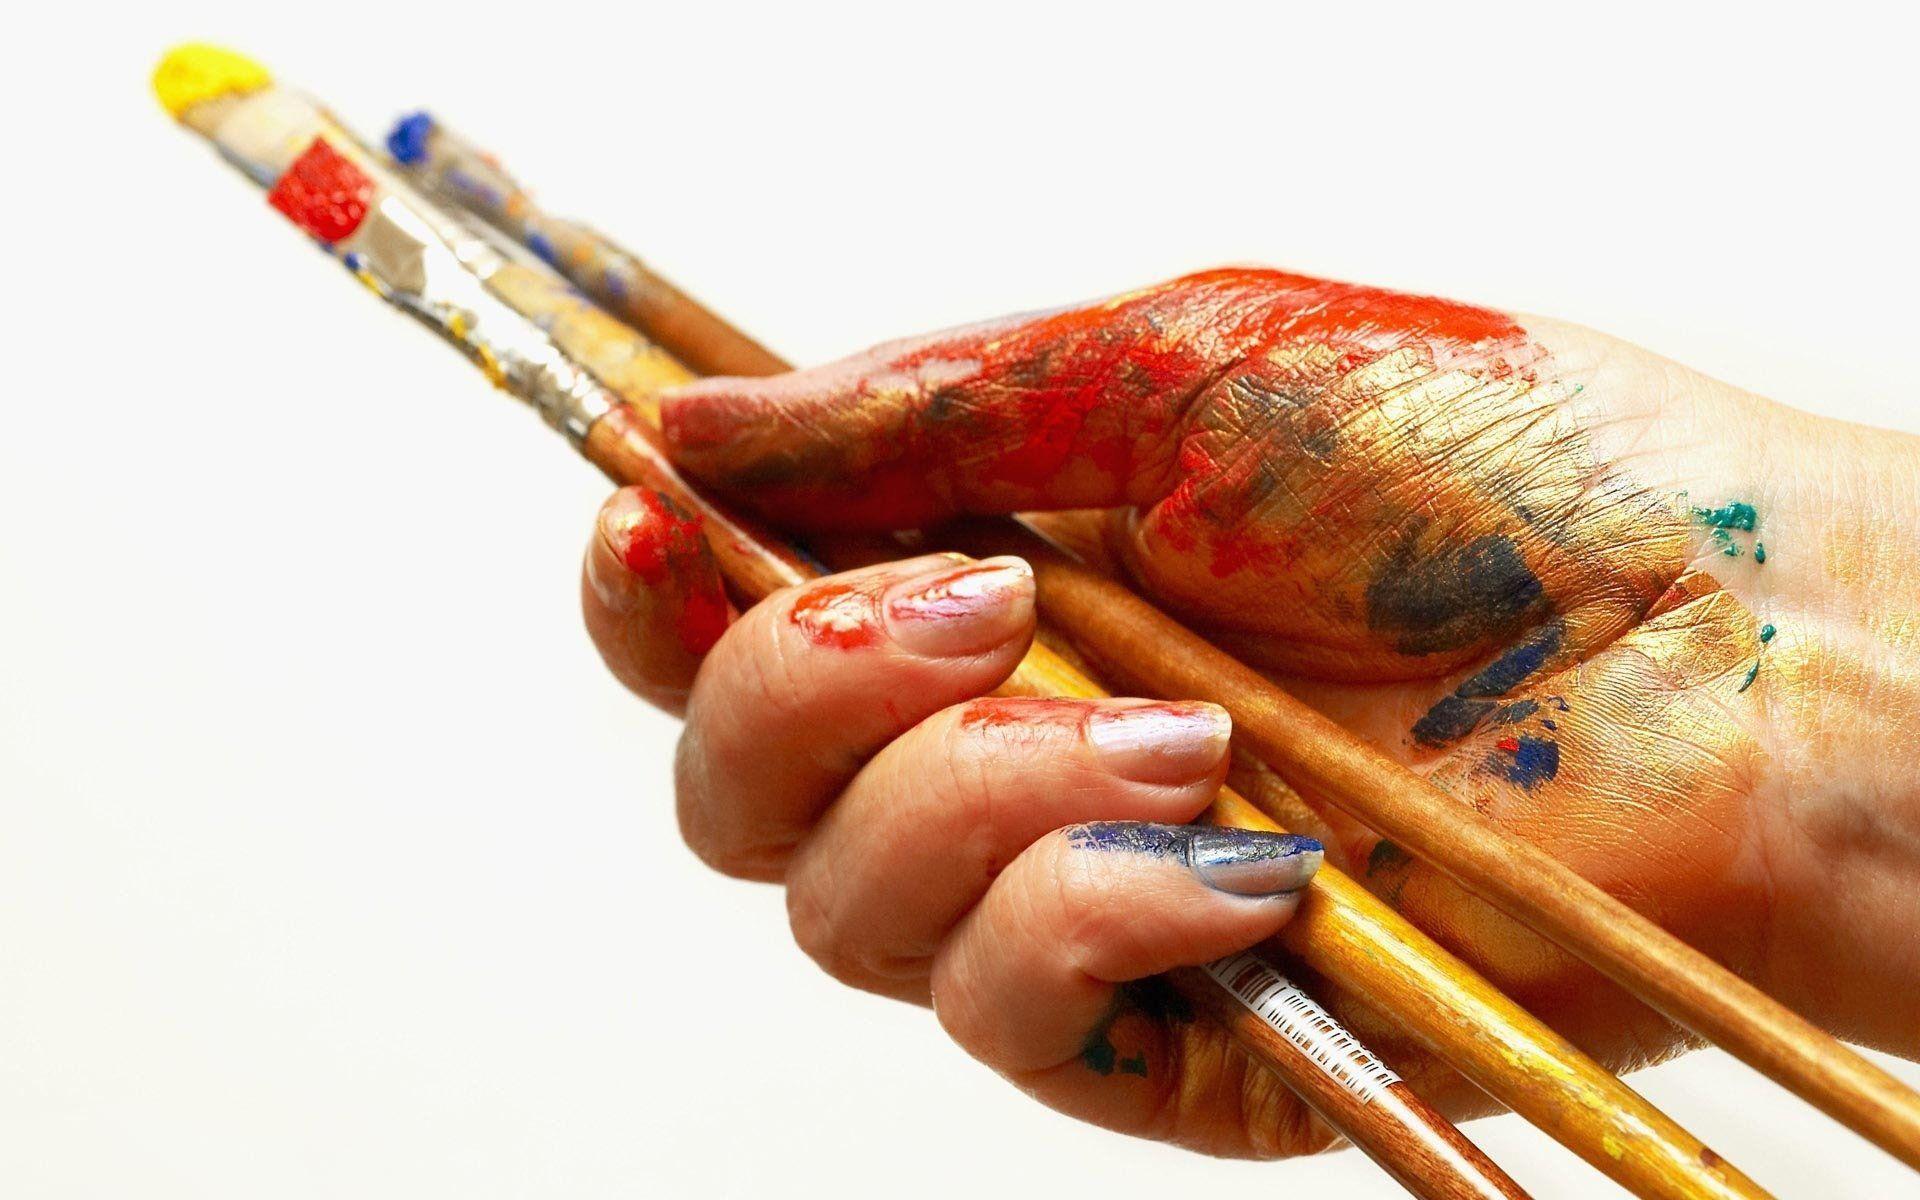 Painter's Hand